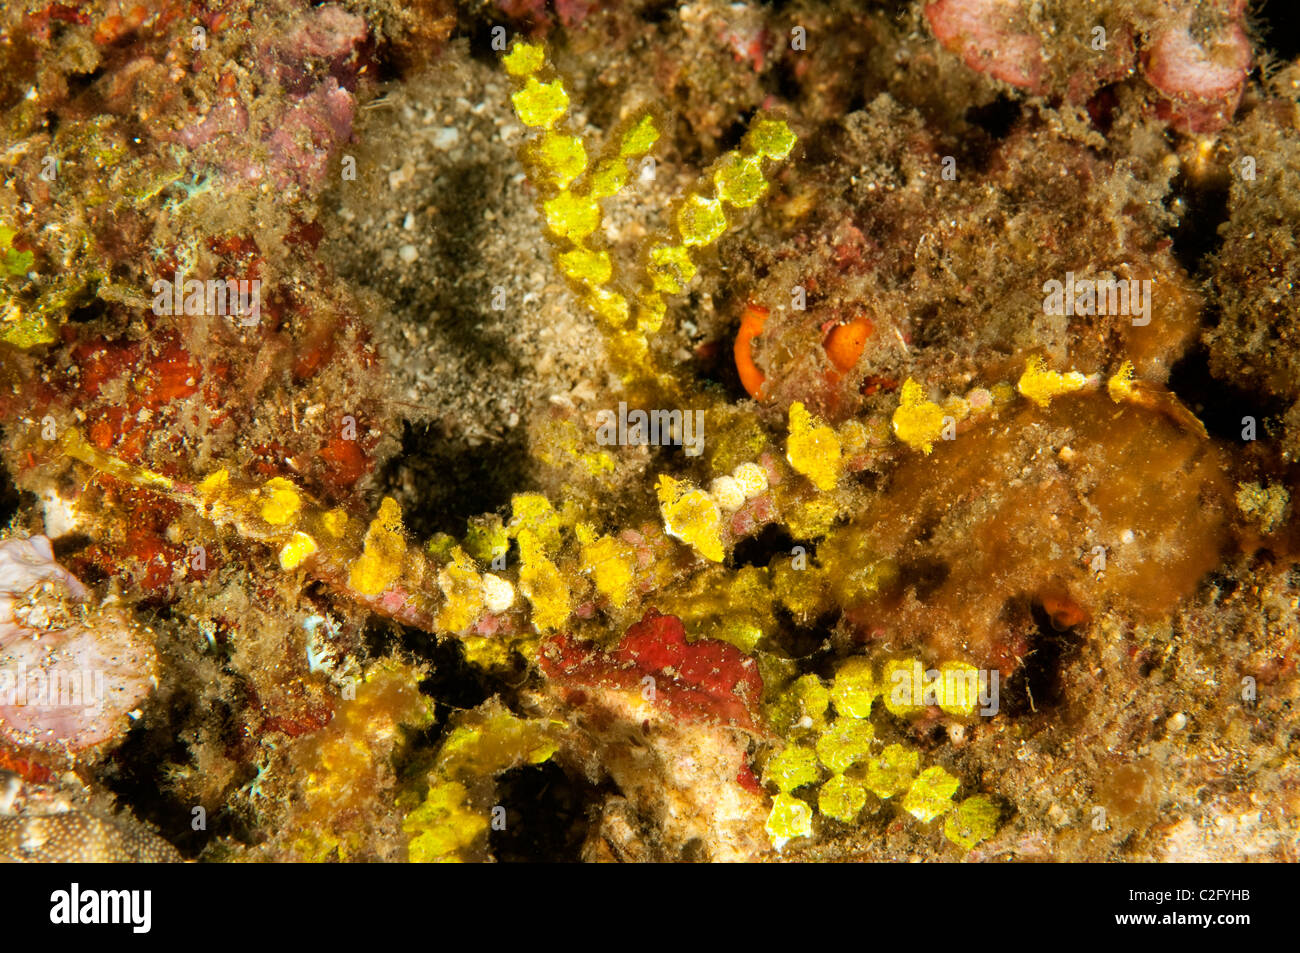 Agujas de mar alado, Halicampus macrorhynchus mimicing alga Halimeda Sulawesi, Indonesia Foto de stock